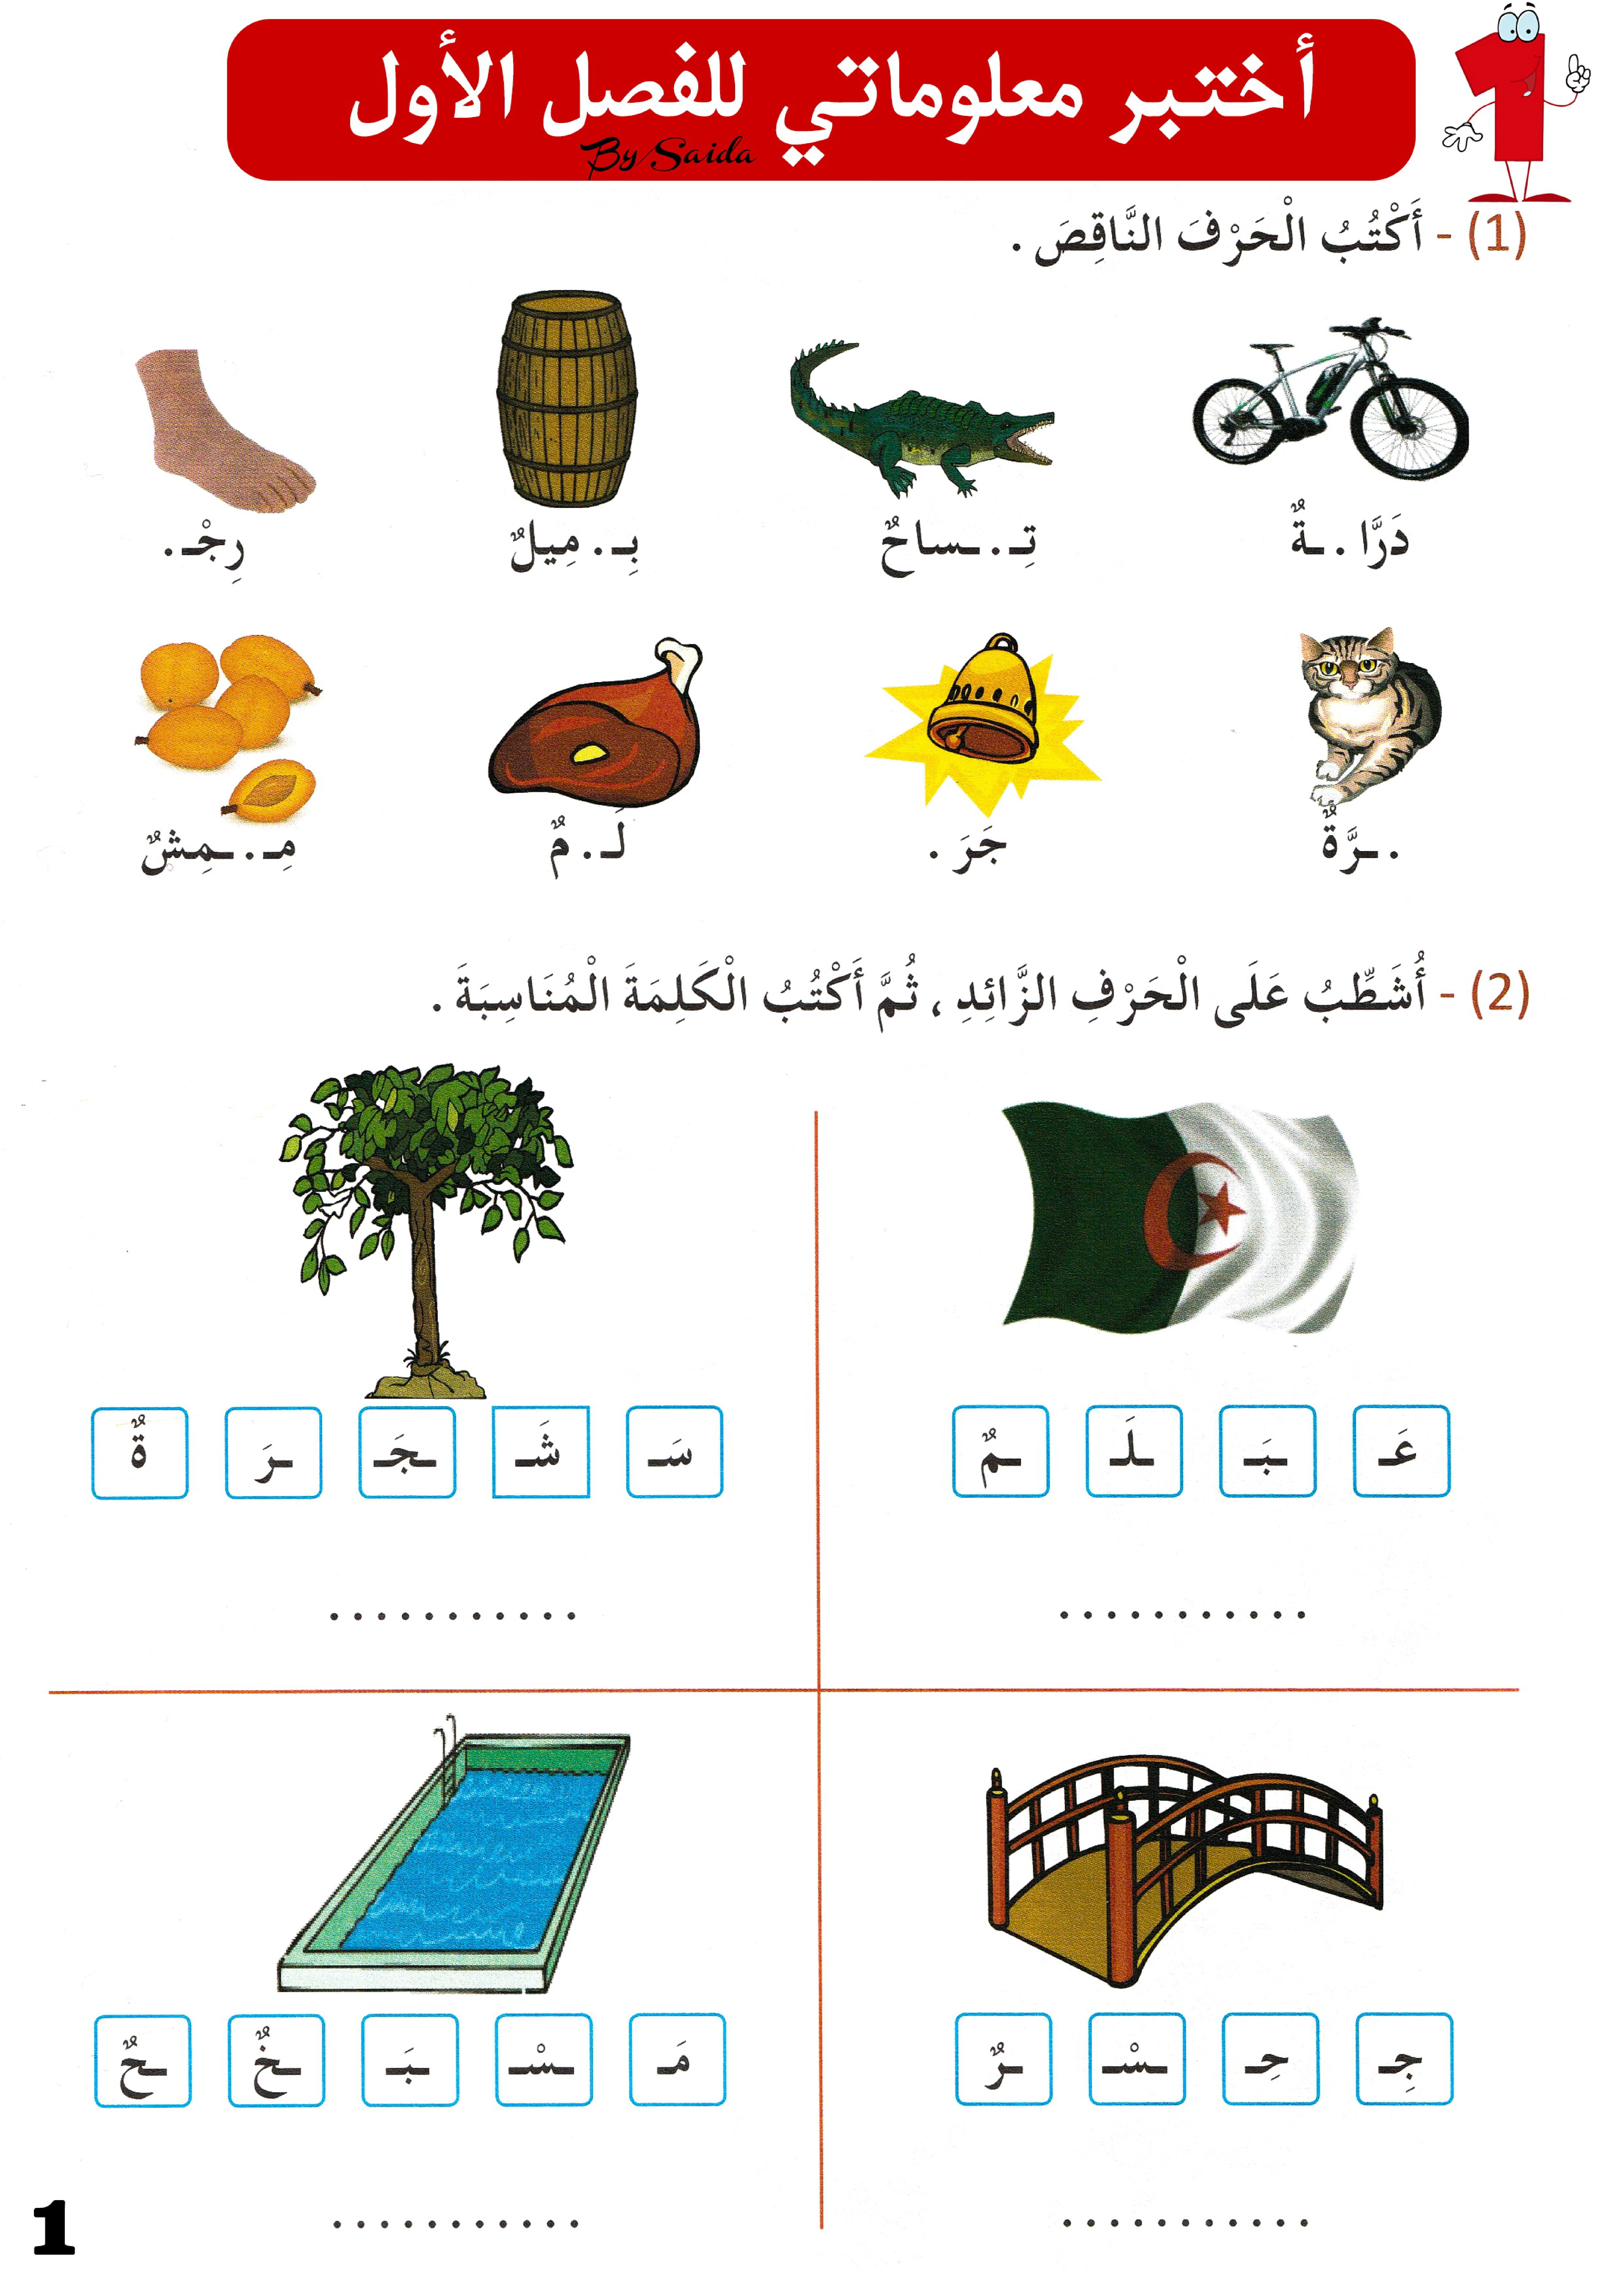 ملزمة أختبر معلوماتي في اللغة العربية للصف الأول الأبتدائي pdf تحميل مباشر مجاني